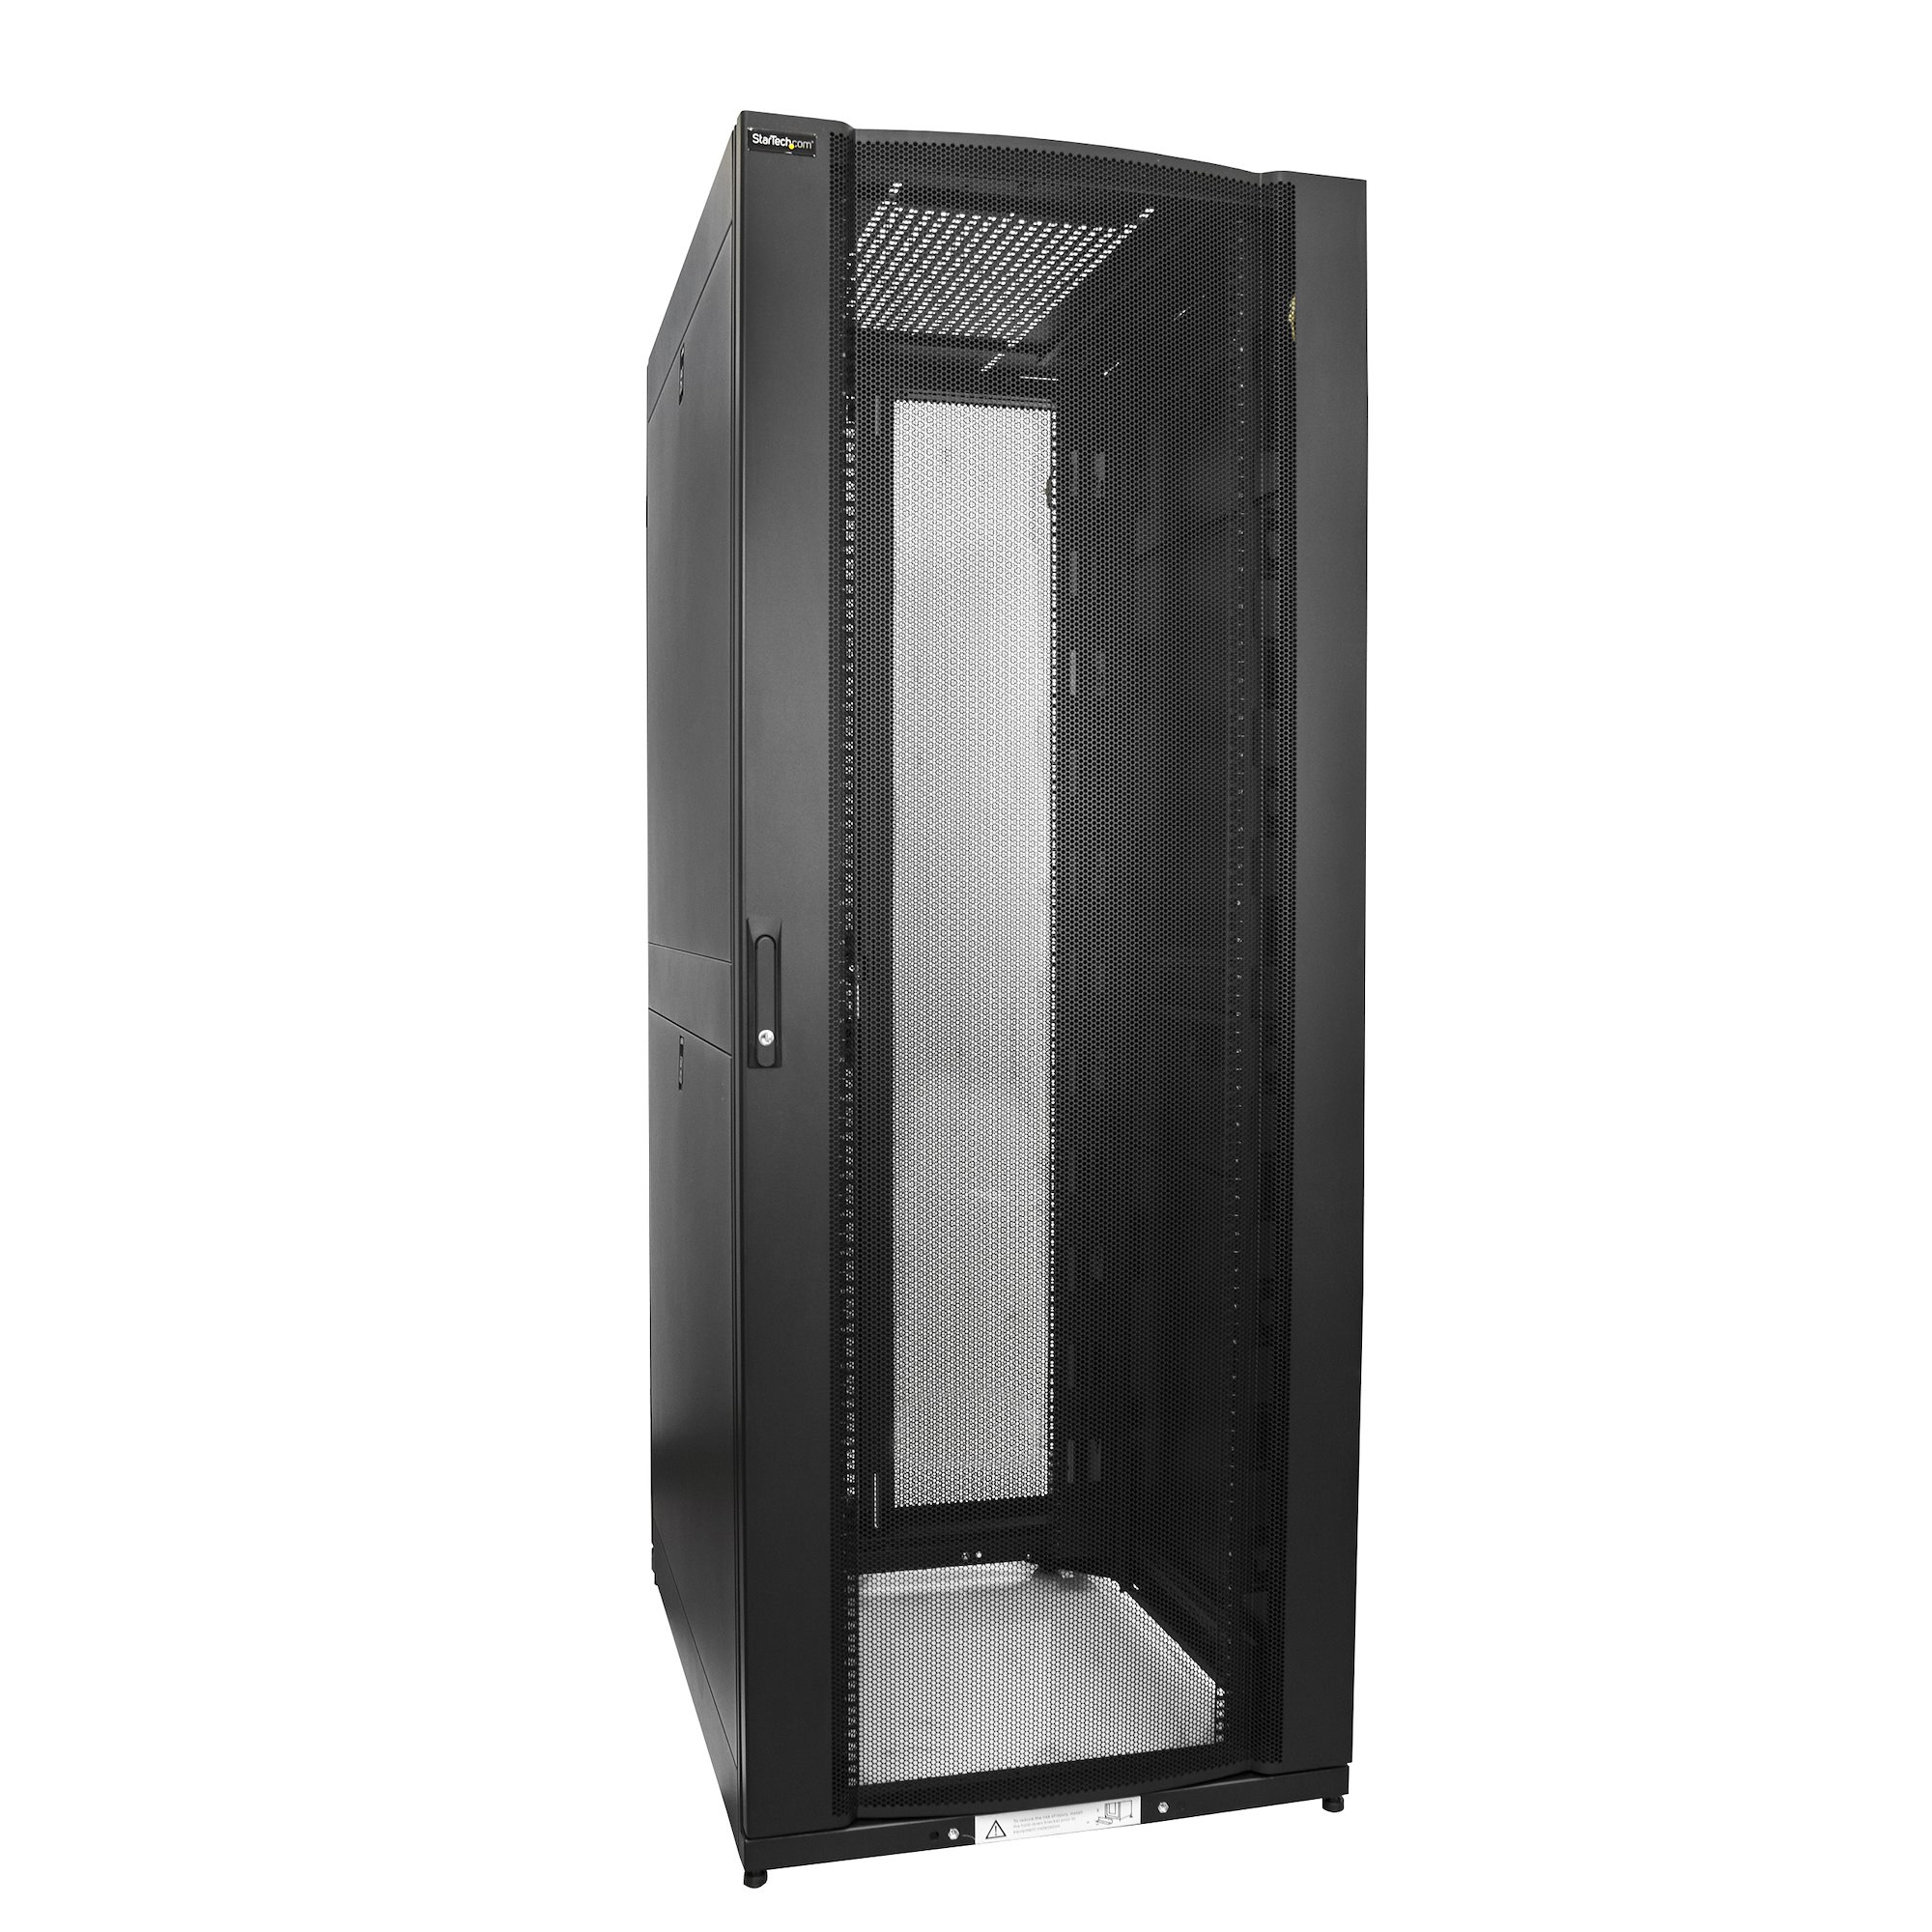 【サイズ】 42U Server Rack cabinet-37 inches deep x 30 inches Wide Cabinet ...